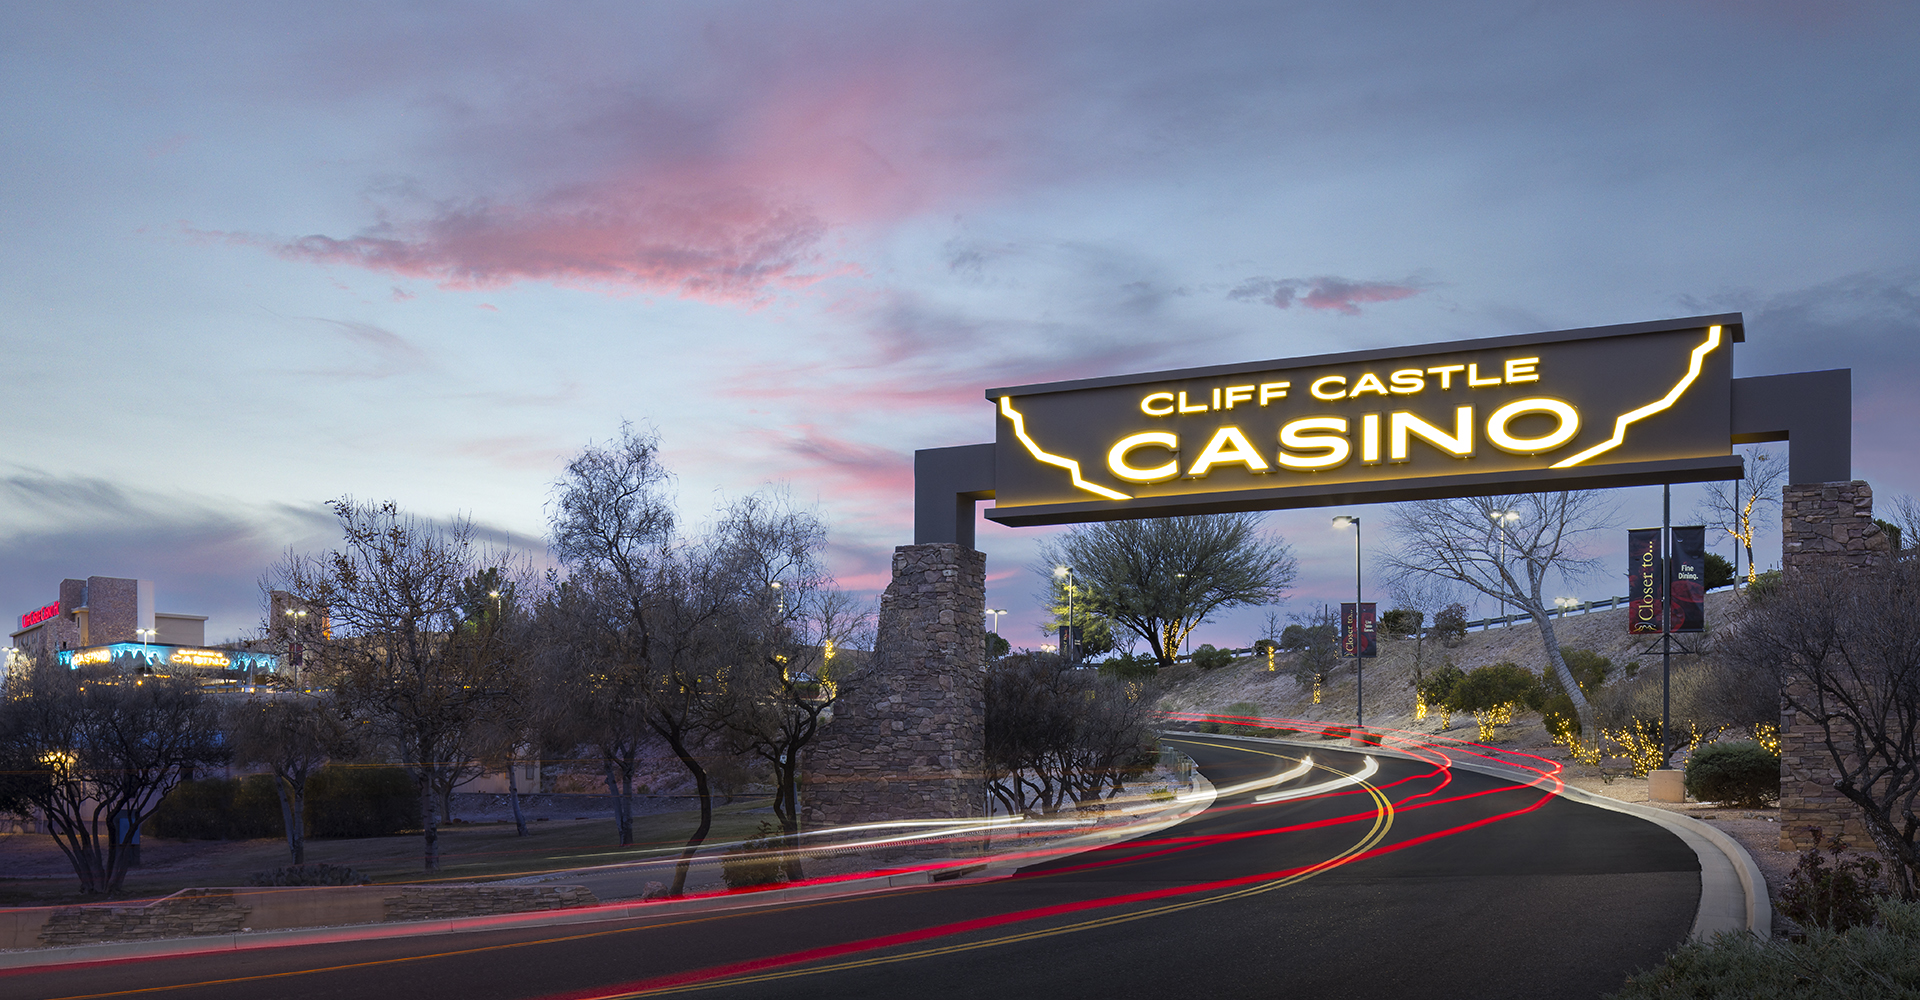 Cliff Castle Casino's Driveway